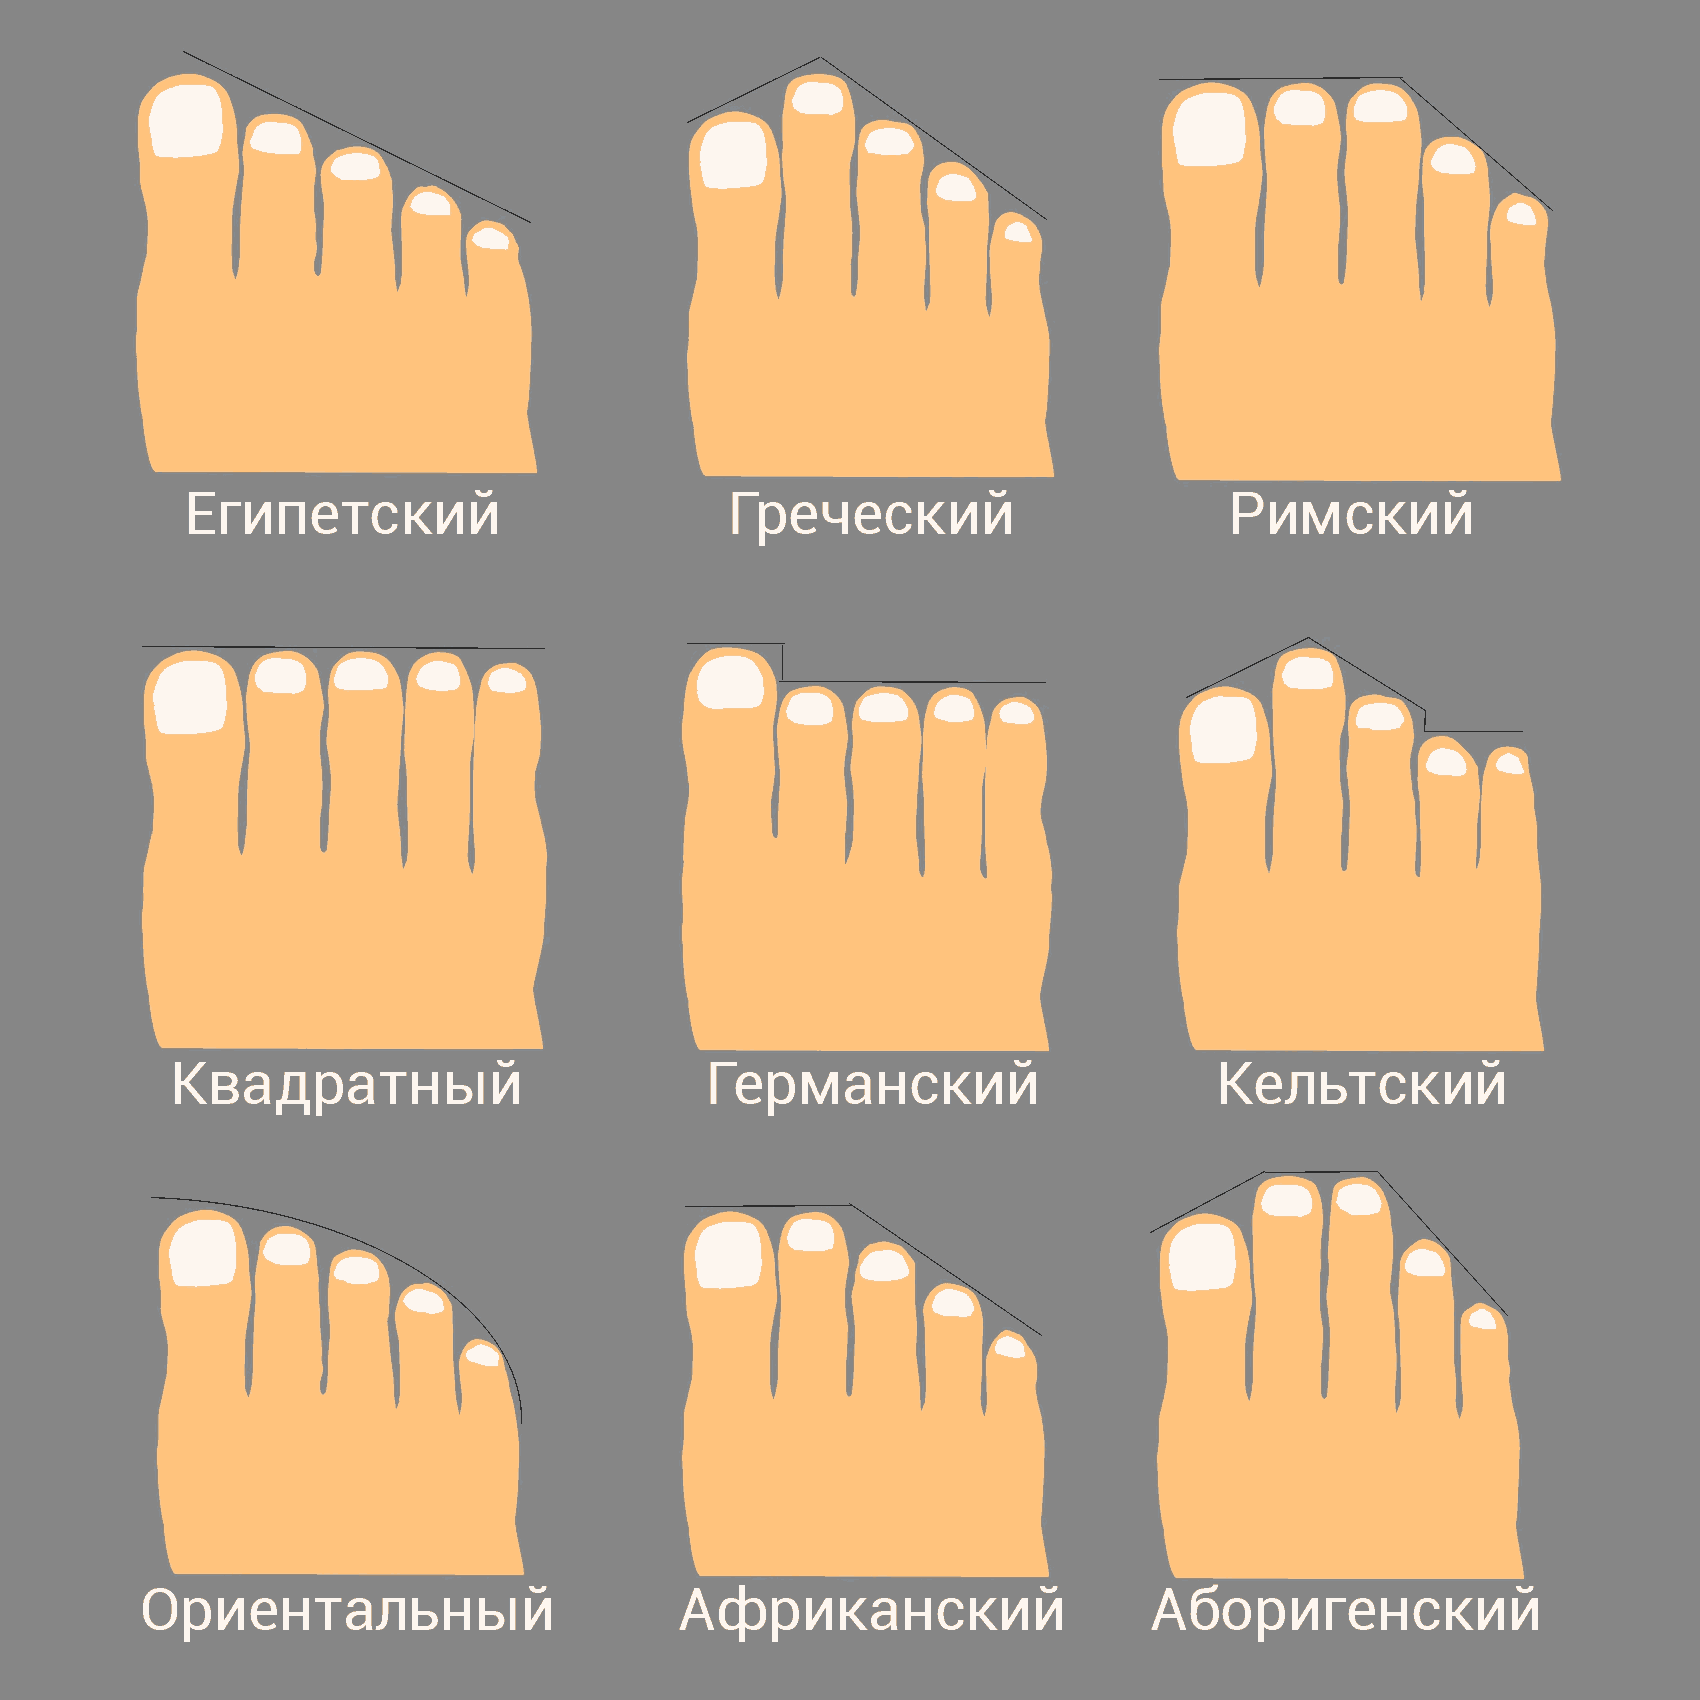 Инфографика: 9 видов стоп в зависимости от формы, которую образуют пальцы.